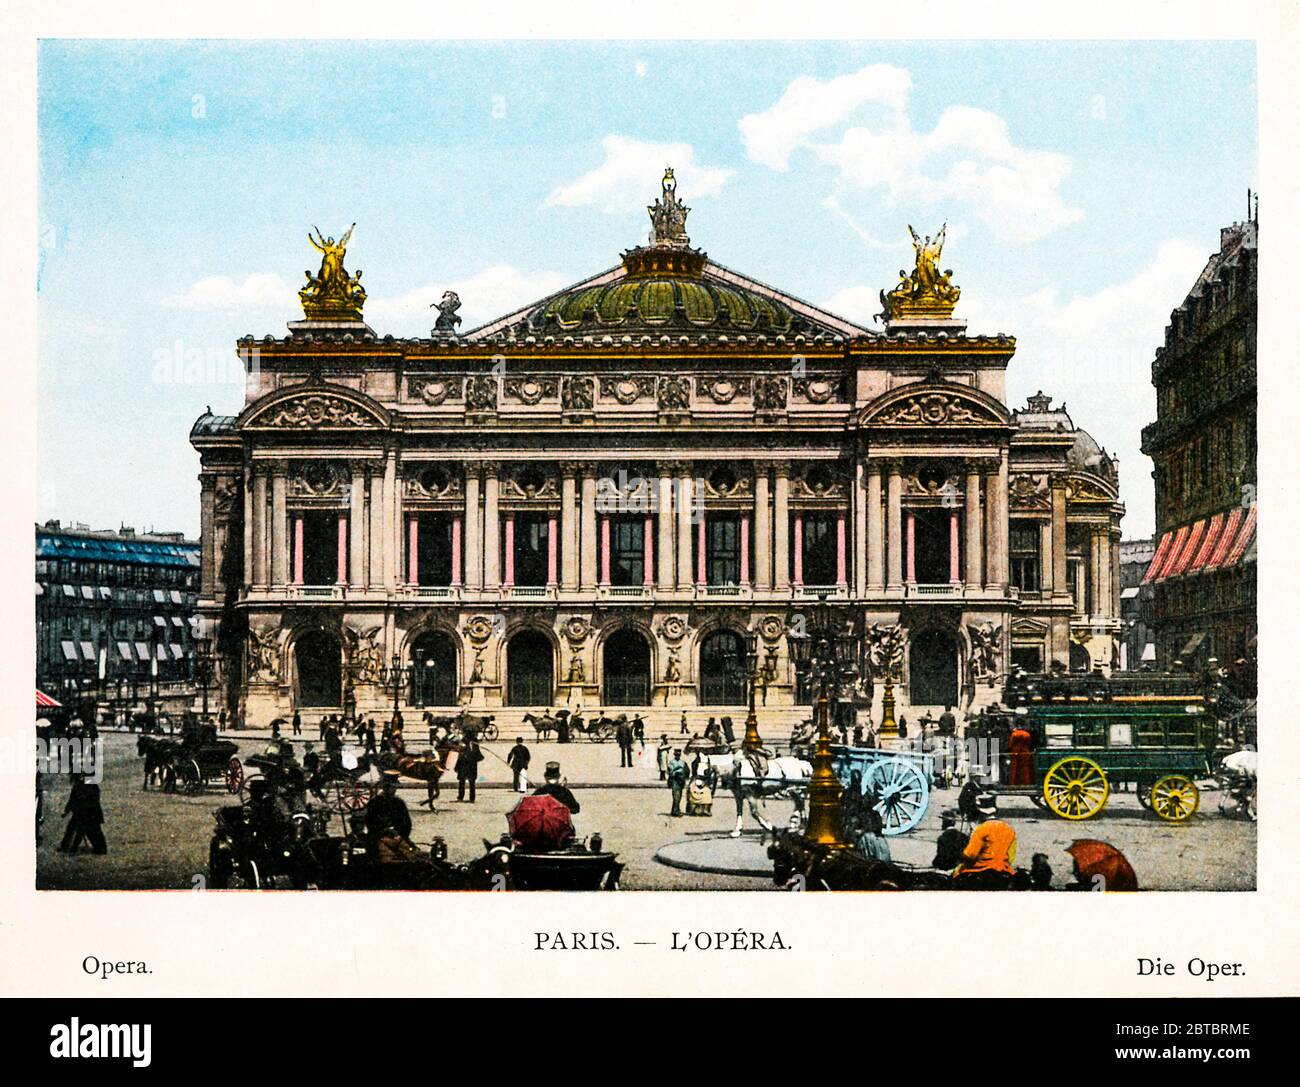 L'Opéra, París 1900 Fotografía a color de la ópera parisina, el Palacio Garnier, construido por Napoleón III y terminado en 1875 Foto de stock